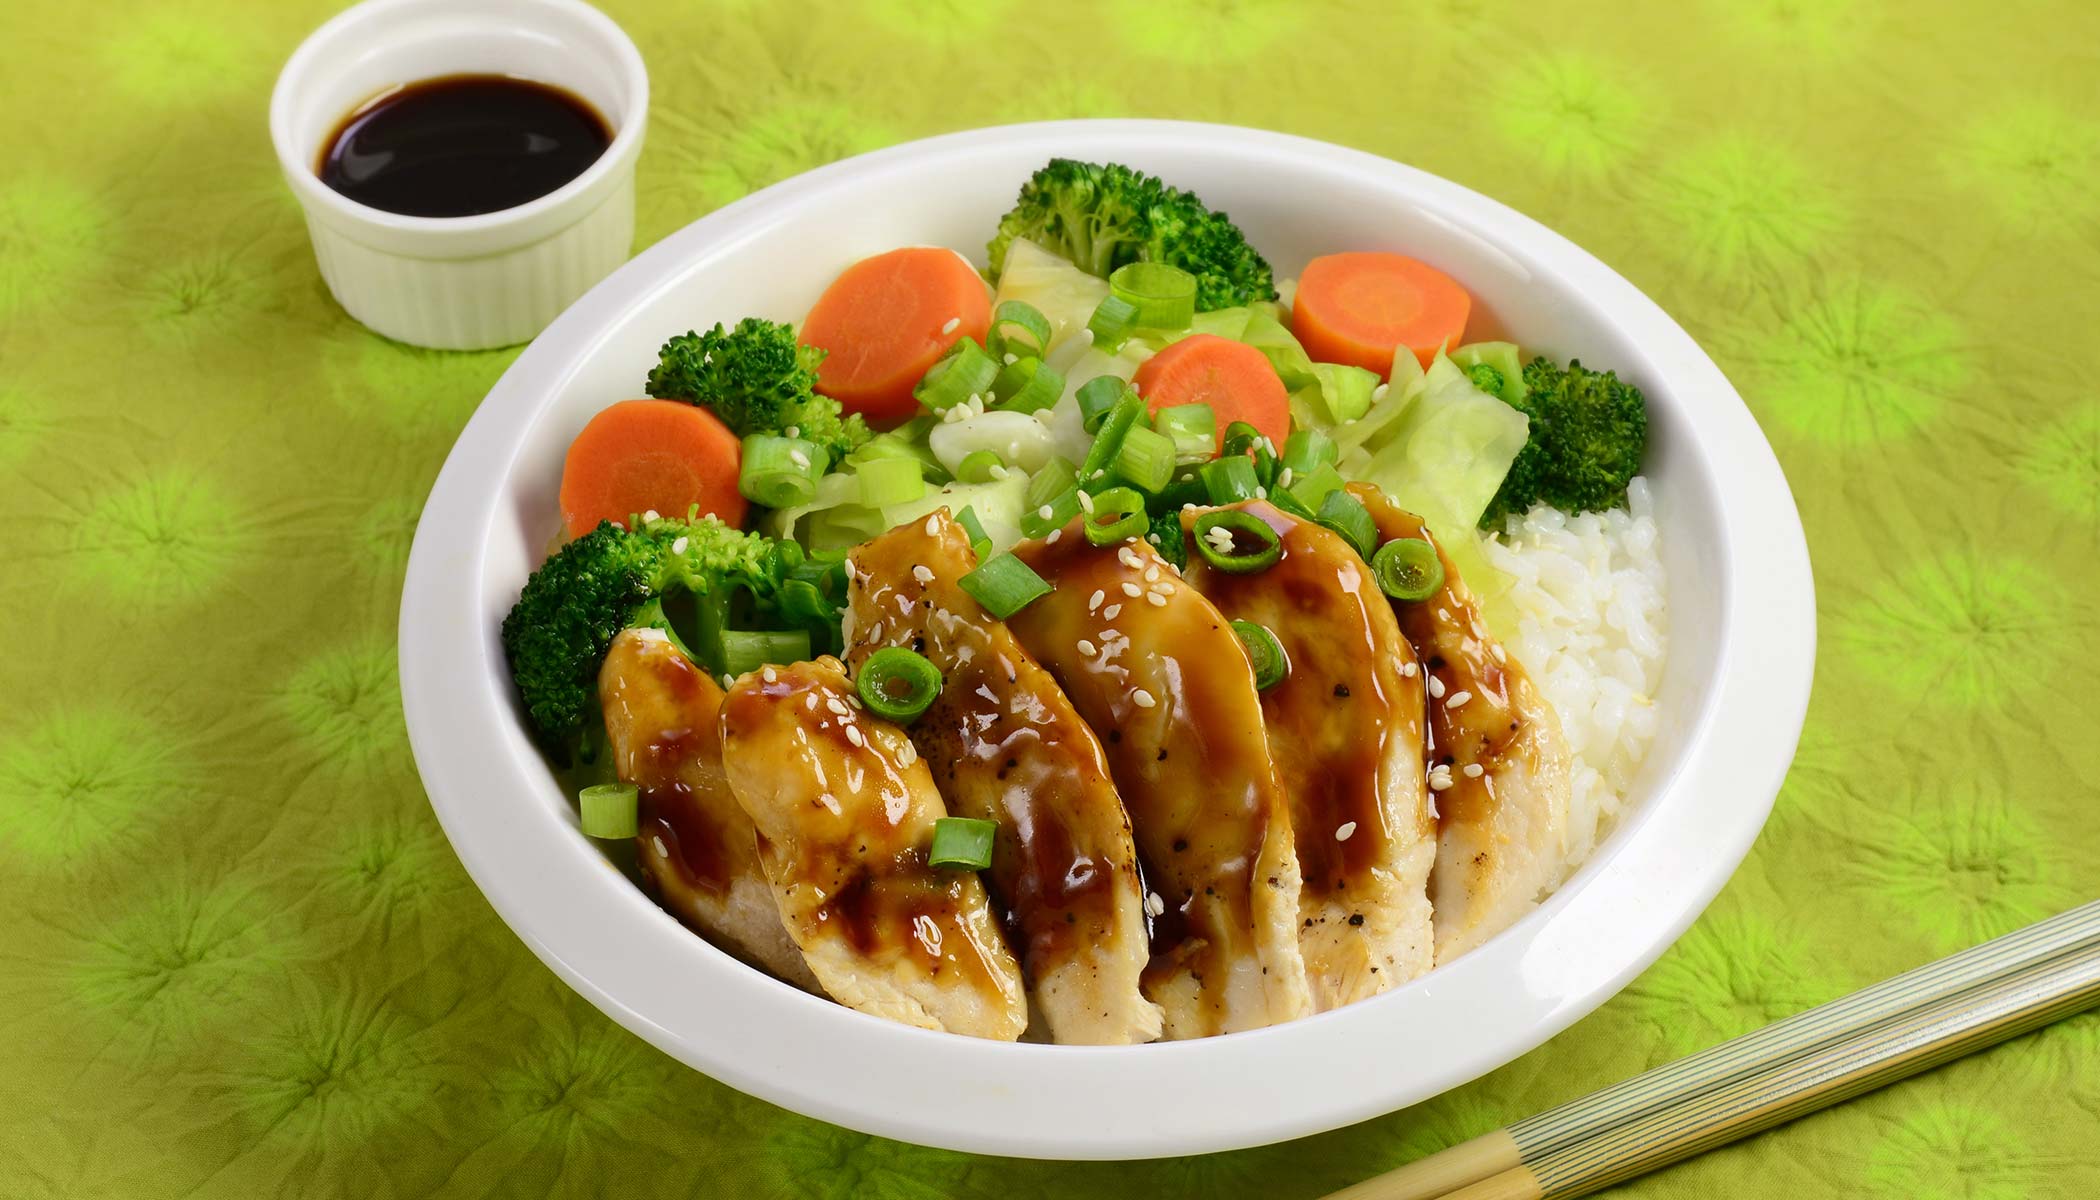 Zojirushi Recipe – Teriyaki Chicken Bowl